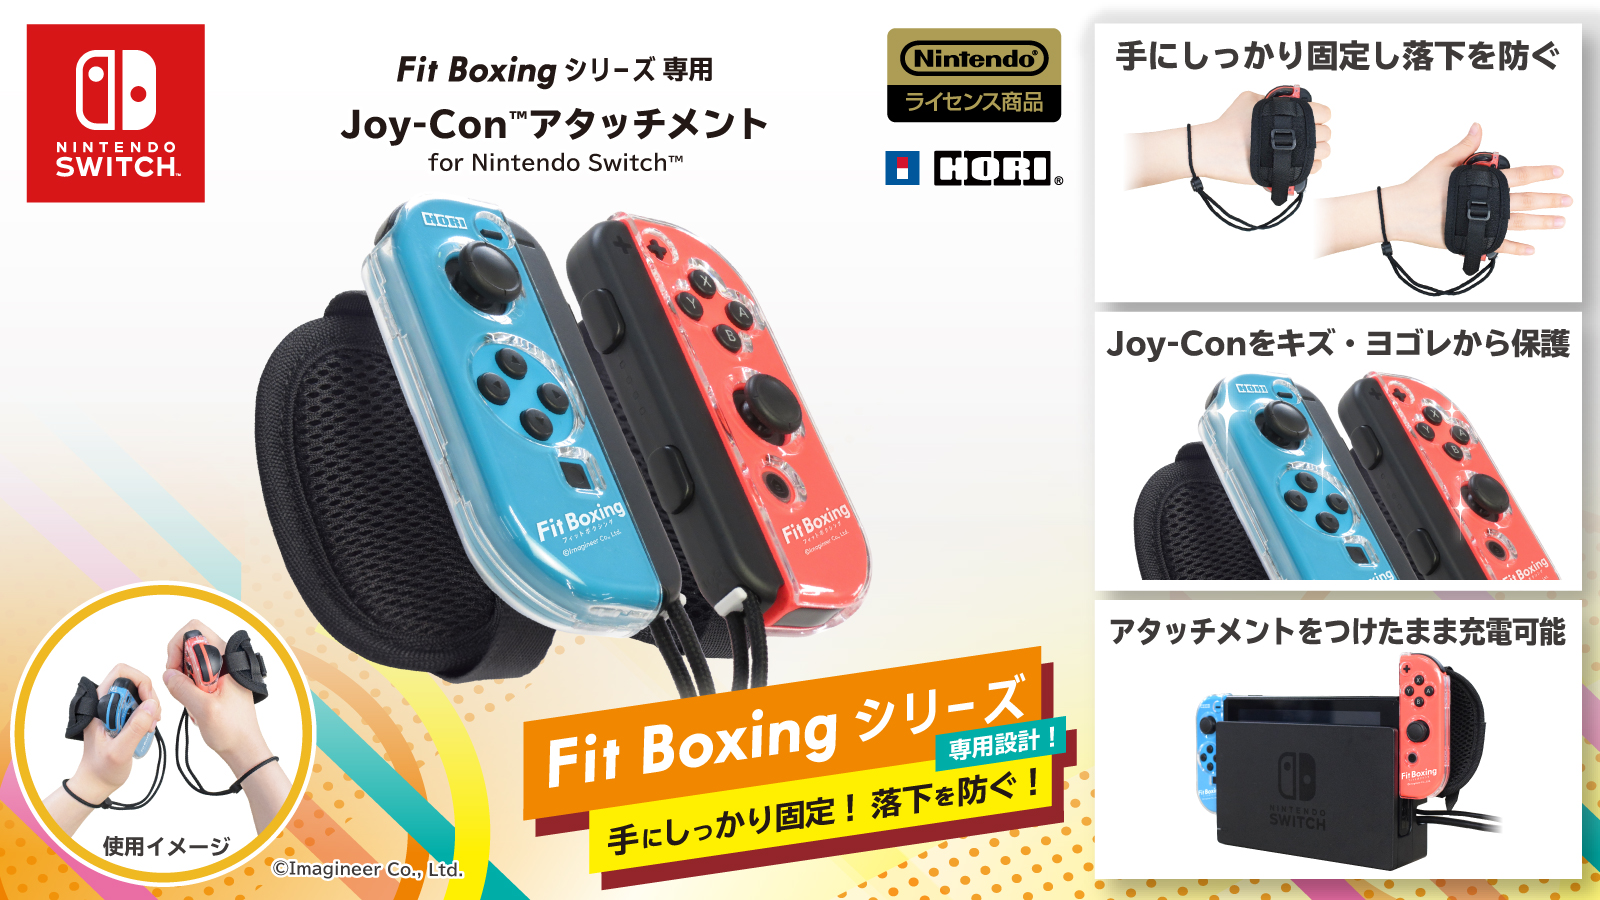 Nintendo Switch ソフト Fit Boxing 2 リズム エクササイズ 専用設計のjoy Con アタッチメント発売決定のお知らせ イマジニアのプレスリリース